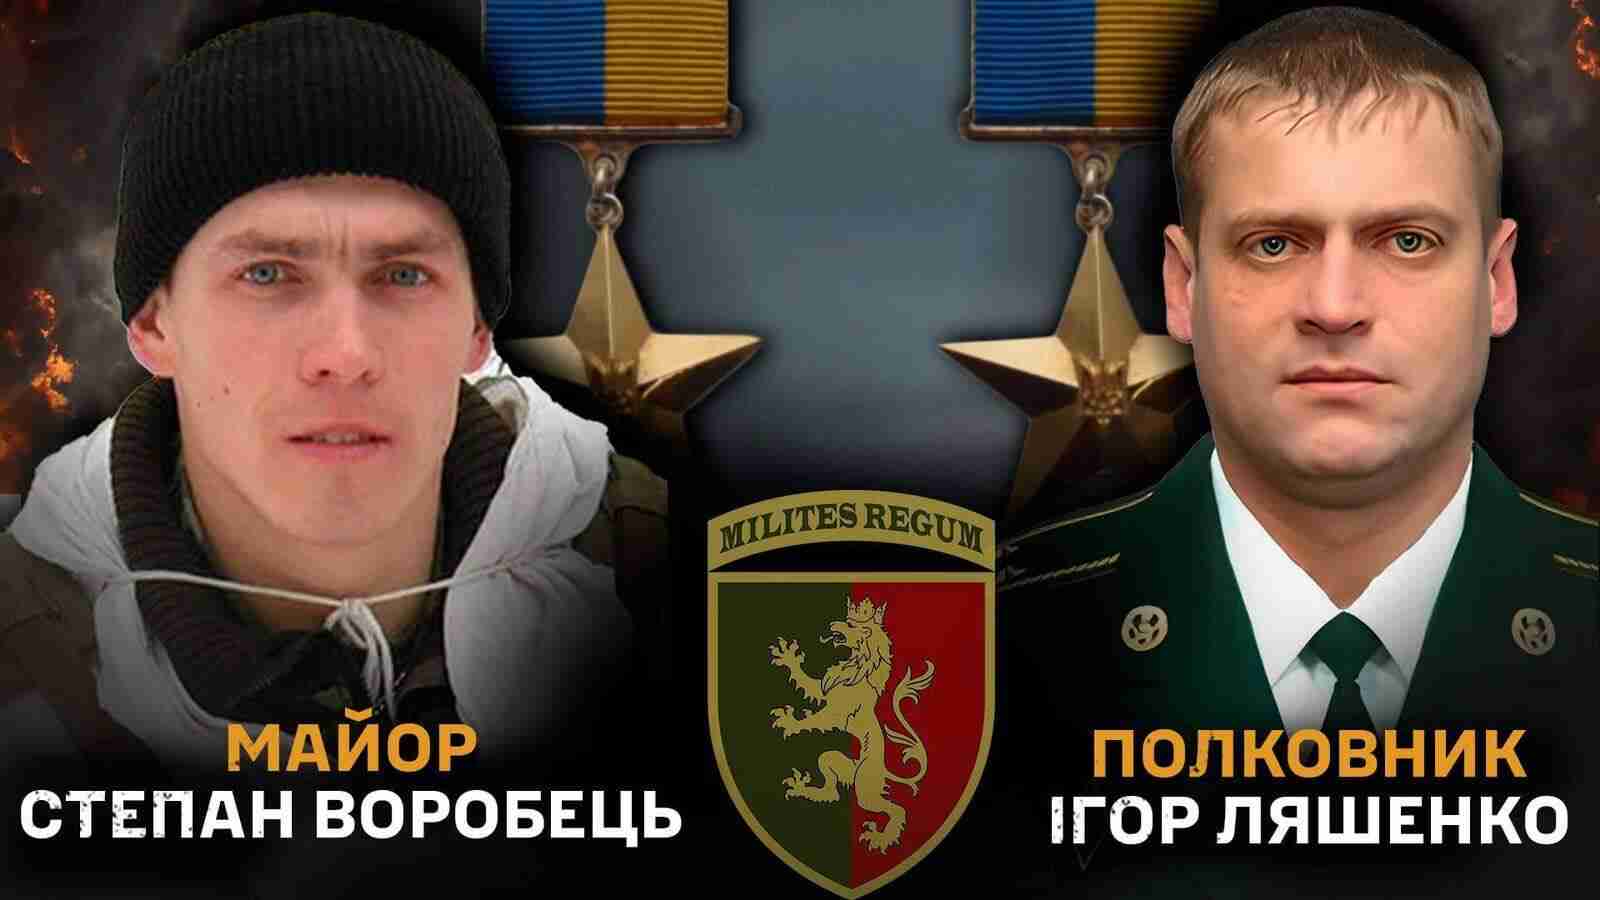 Полковнику та майору зі Львівщини посмертно присвоєно звання «Герой України»